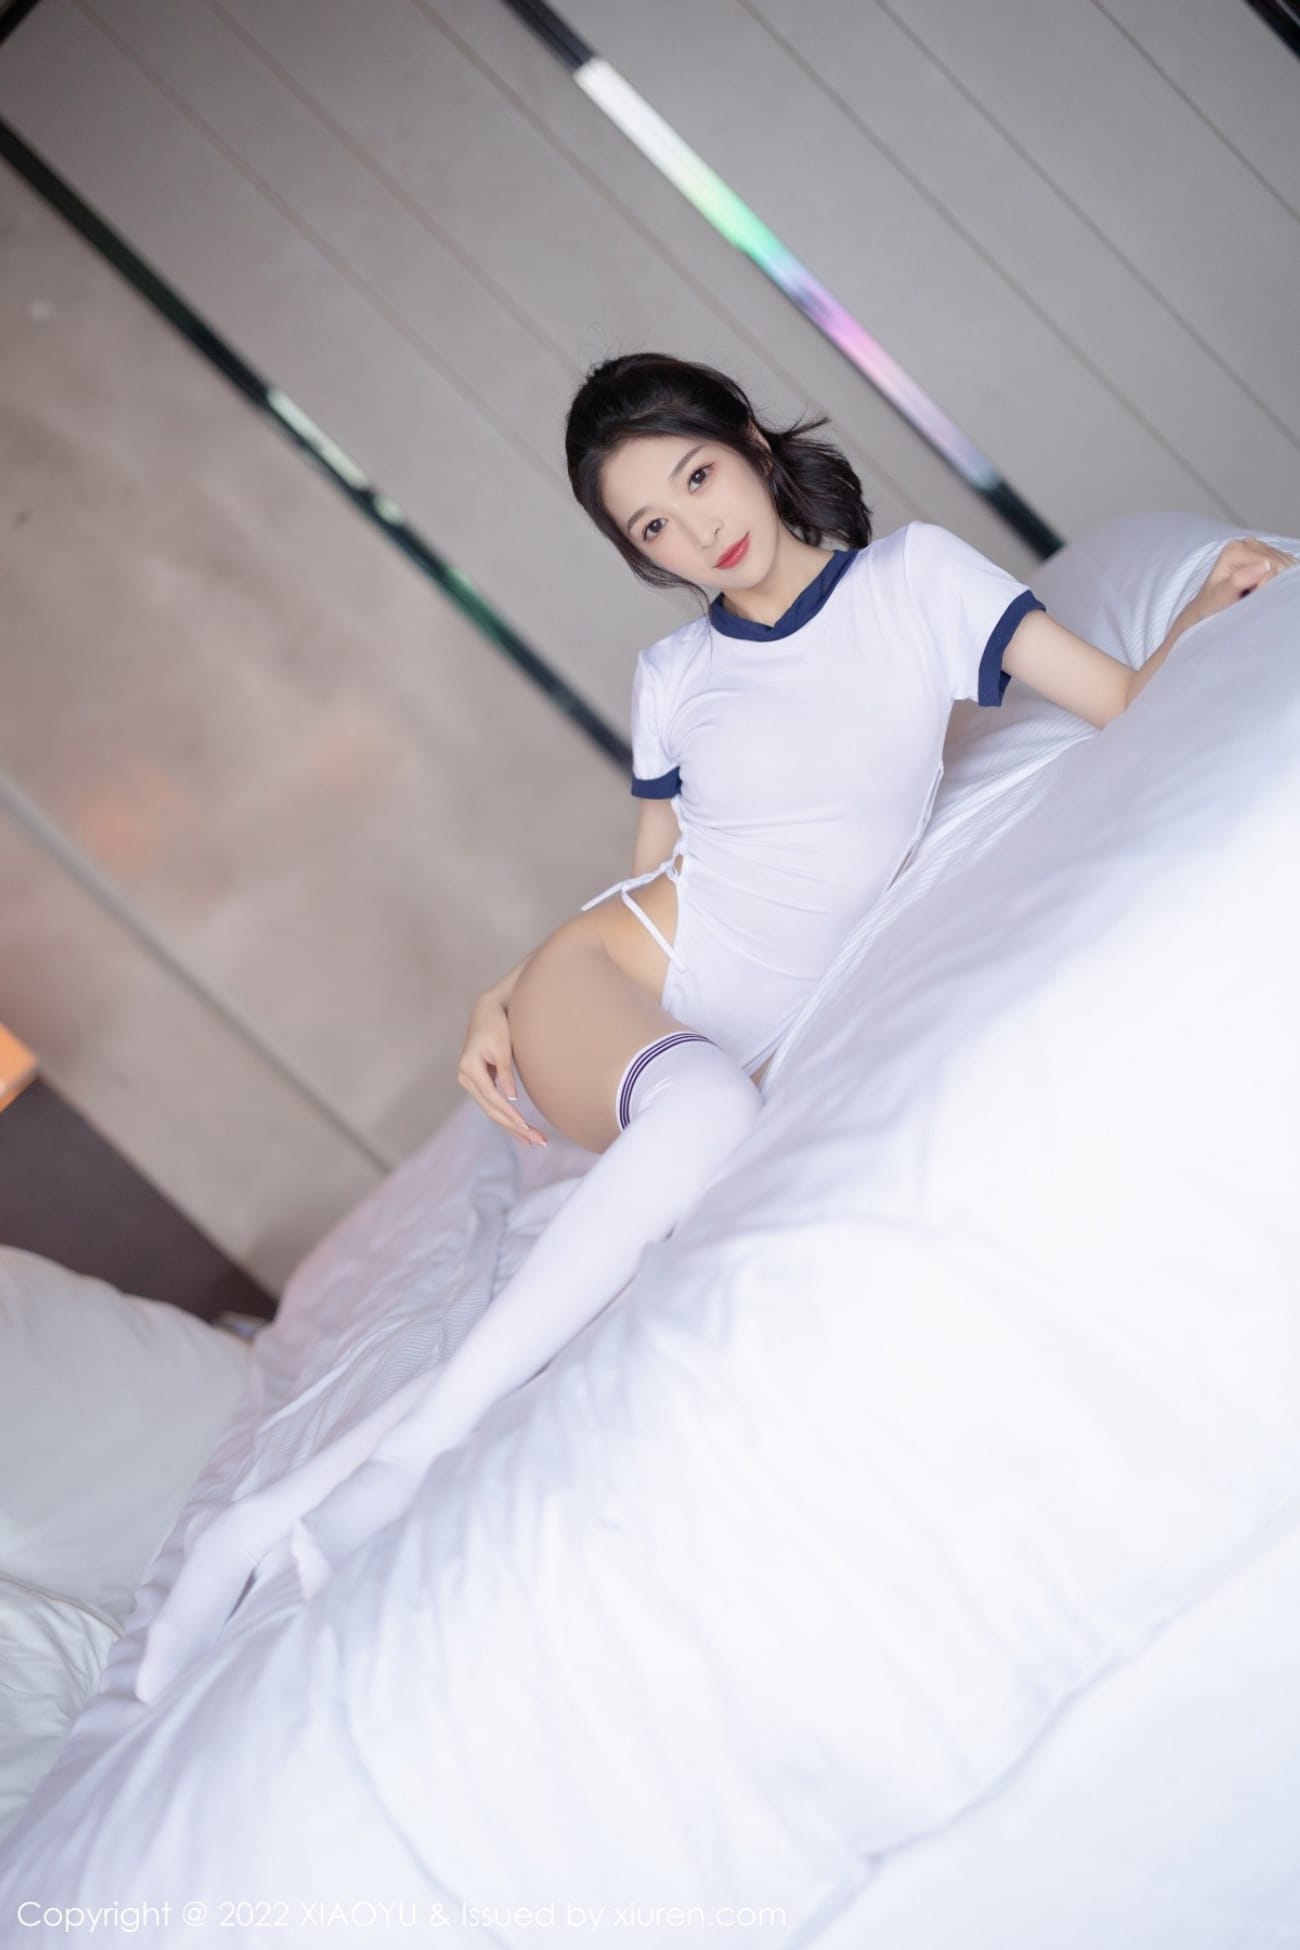 语画界新人模特林乐一白色收身服饰酒店室内场景性感写真